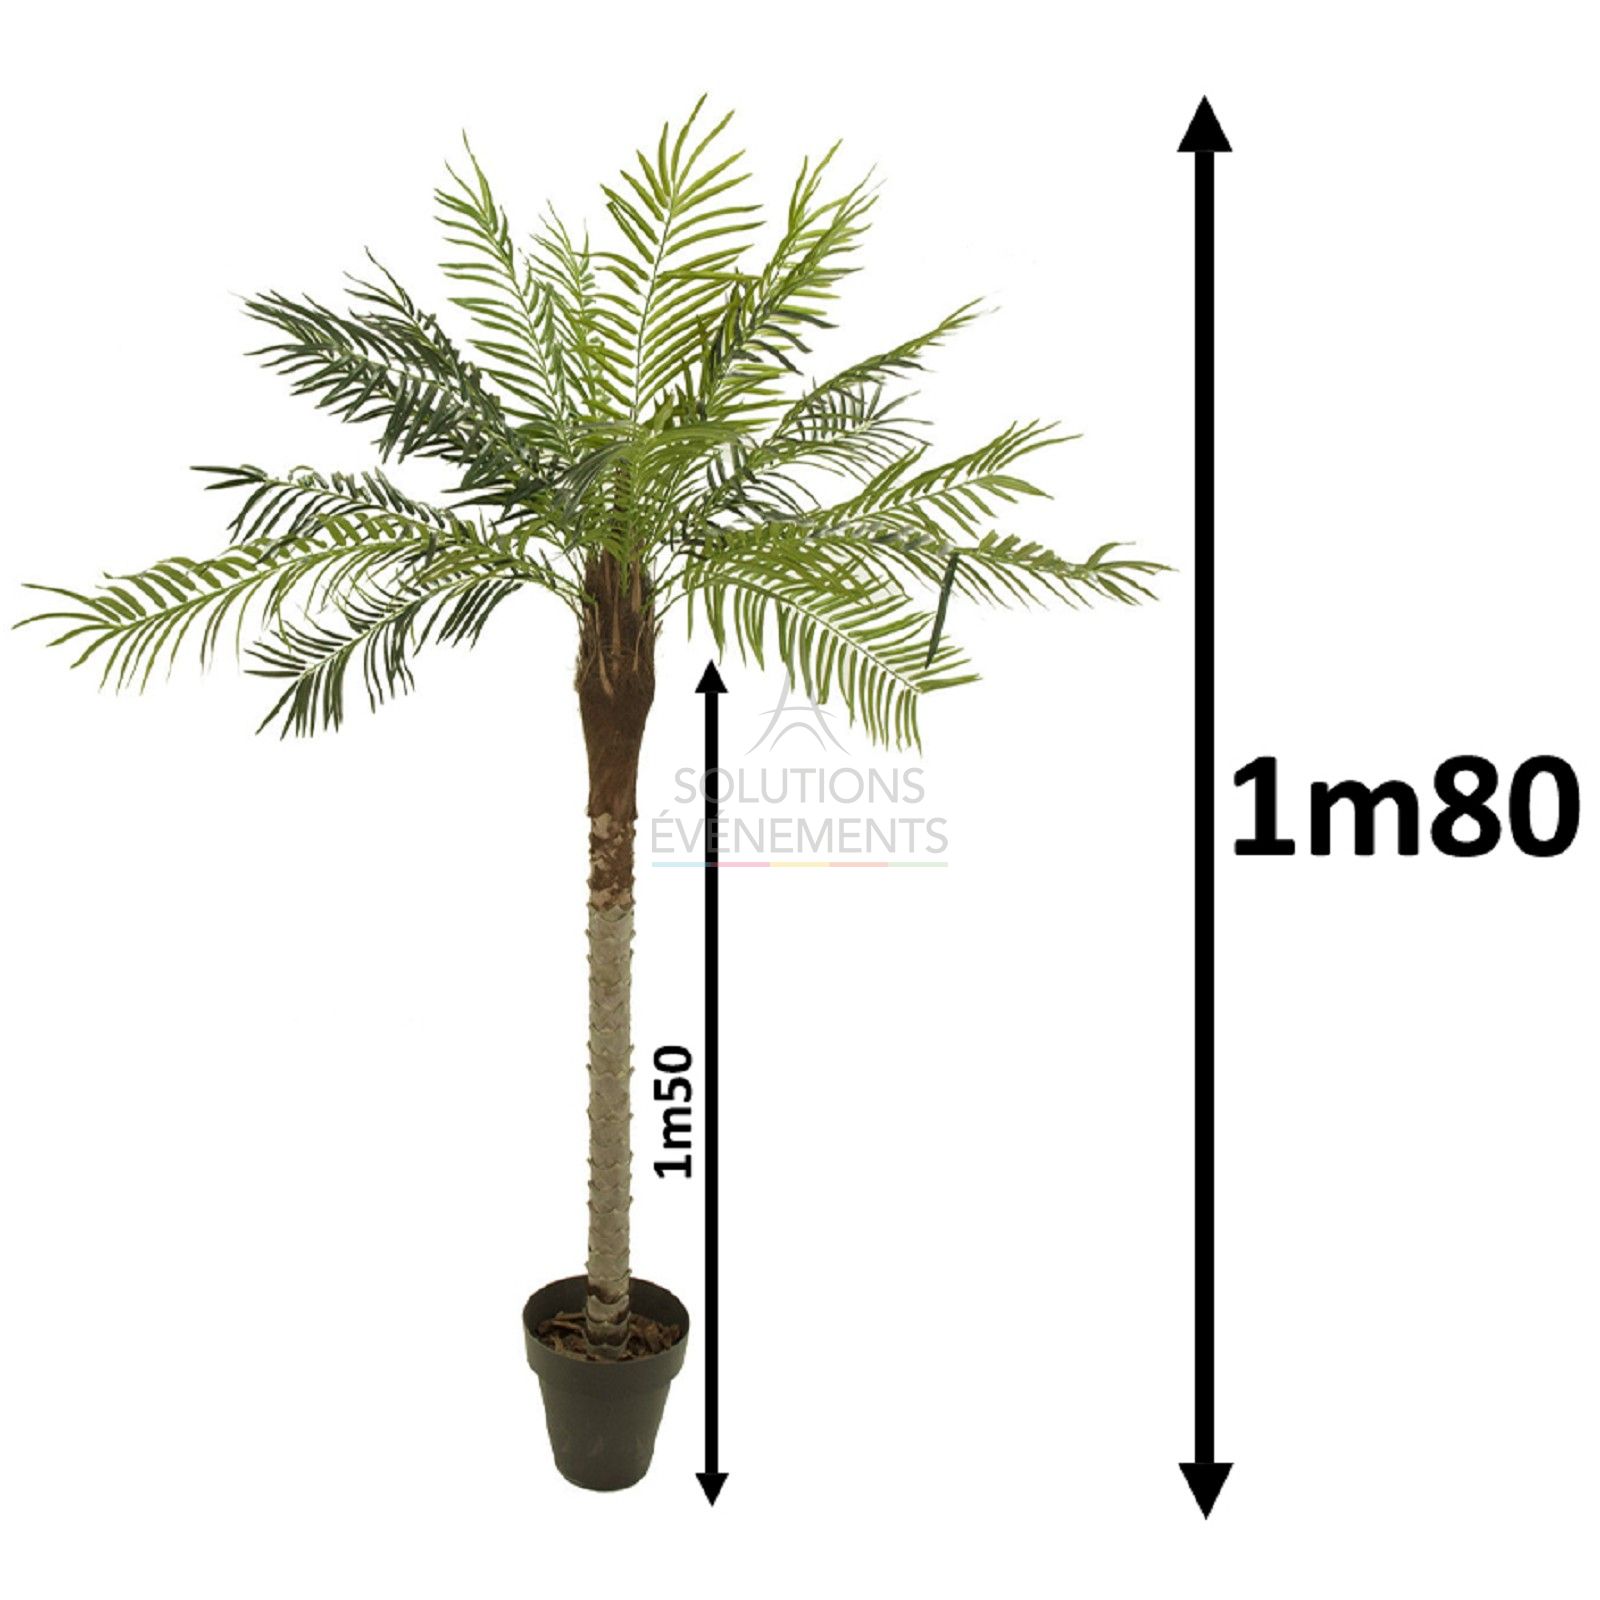 Location de palmiers d'une hauteur d'1m80